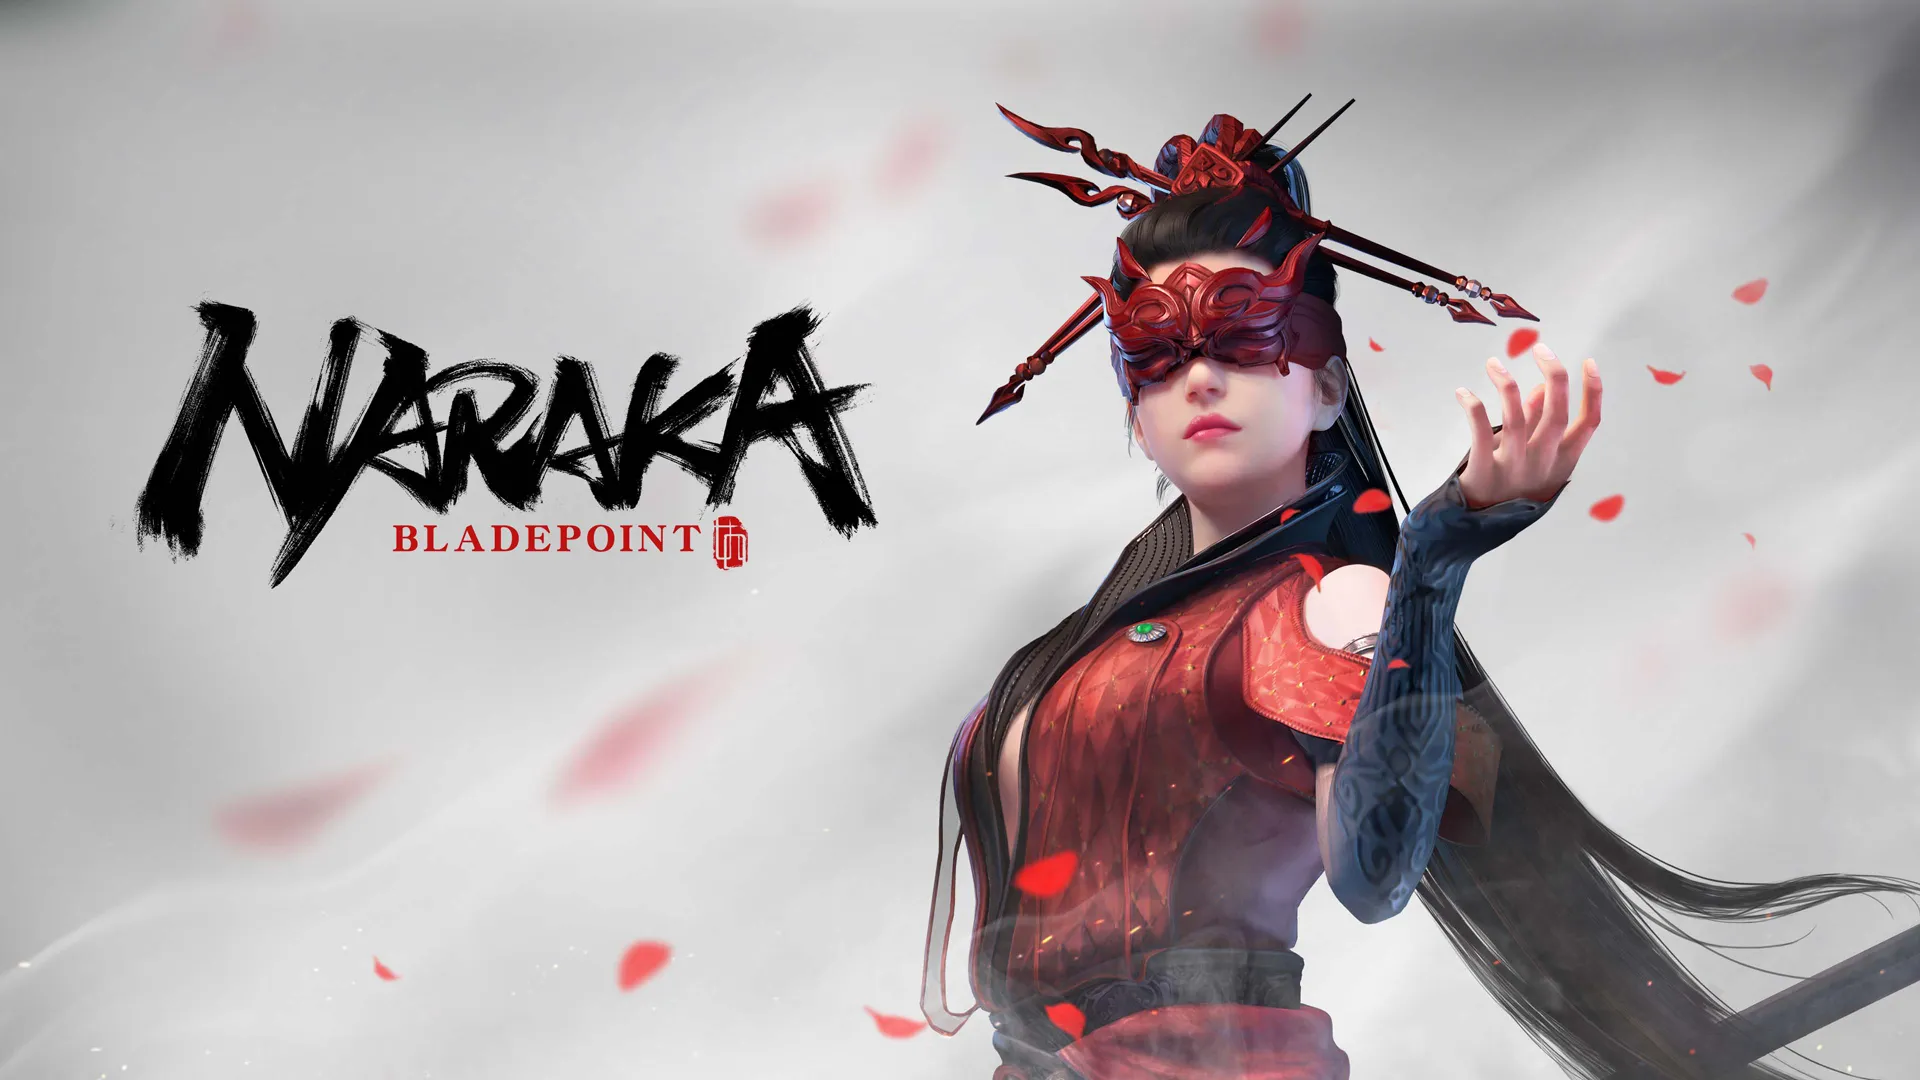 ビデオの対象『Naraka: Bladepoint』が Xbox Game Pass で 6 月 23 日に配信決定